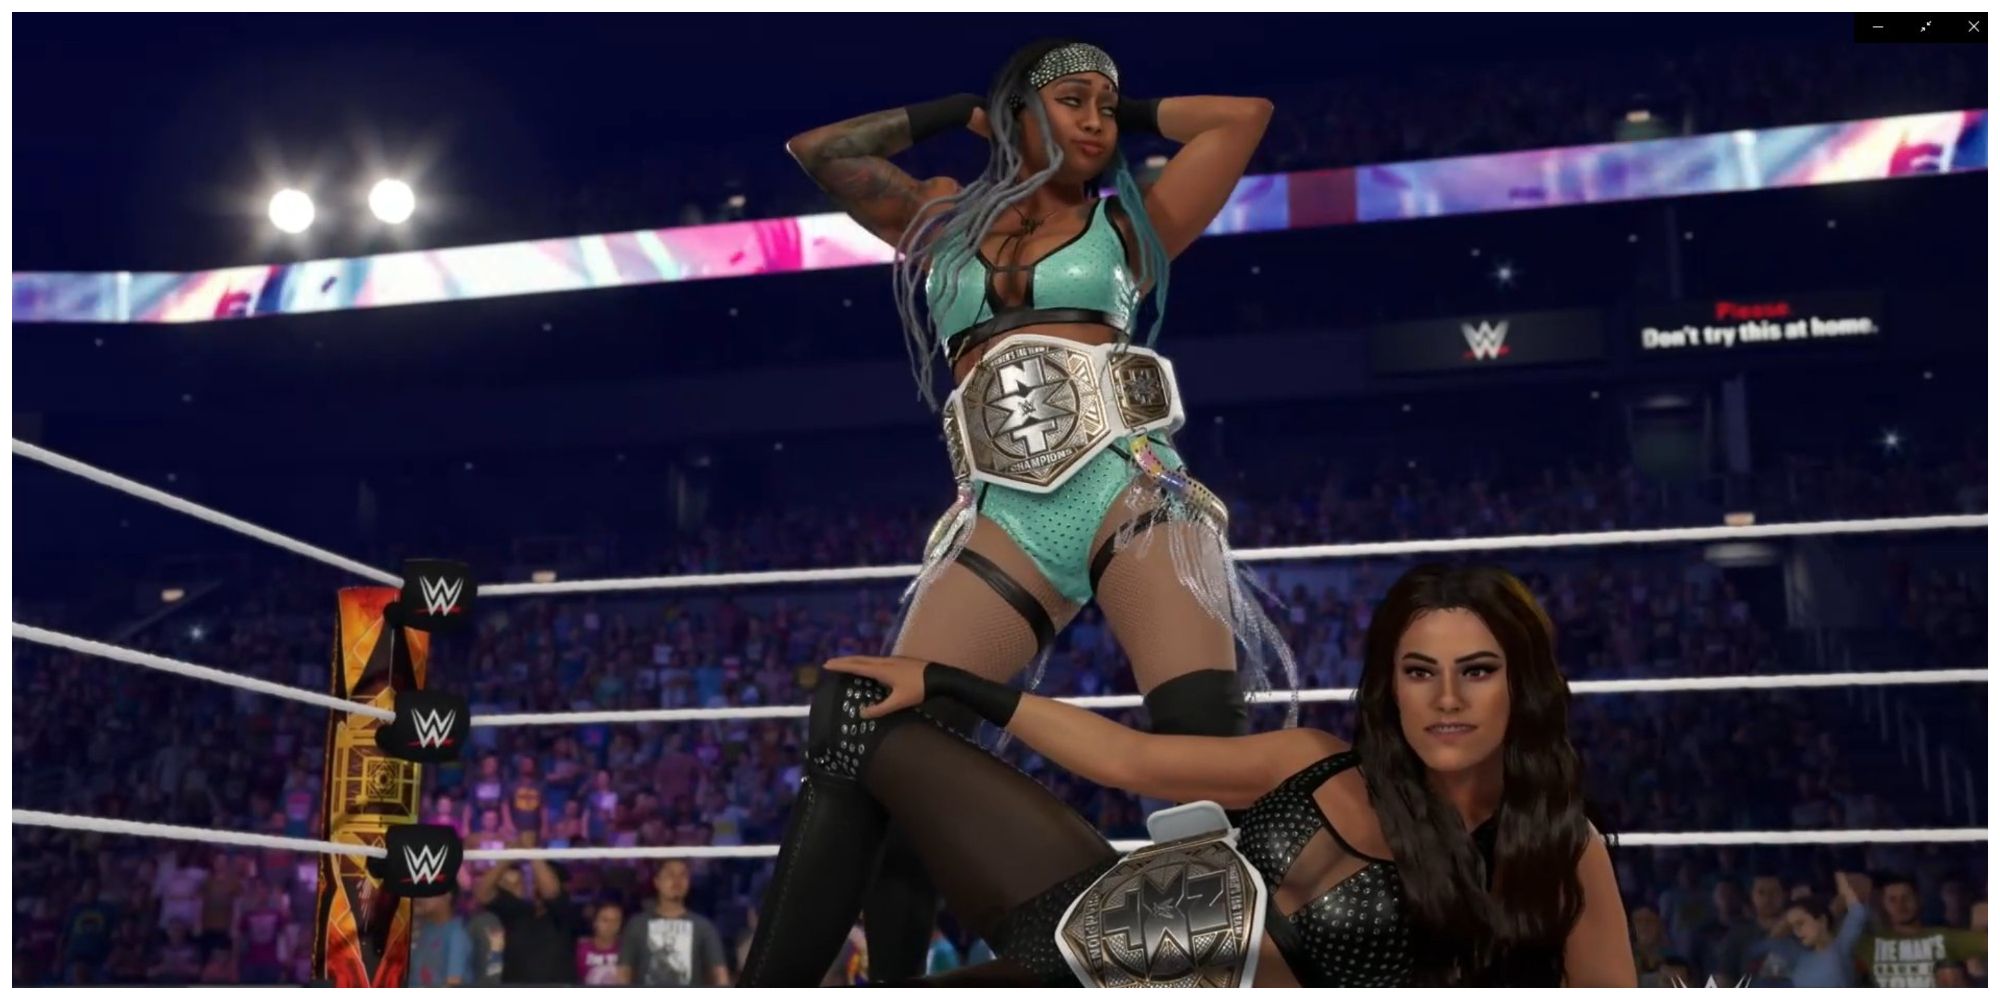 Katana Chance đứng đằng sau Kayden Carter lắc hông.  Carter đang nằm xuống, cả hai người phụ nữ đều tham gia võ đài WWE với Giải vô địch nữ NXT